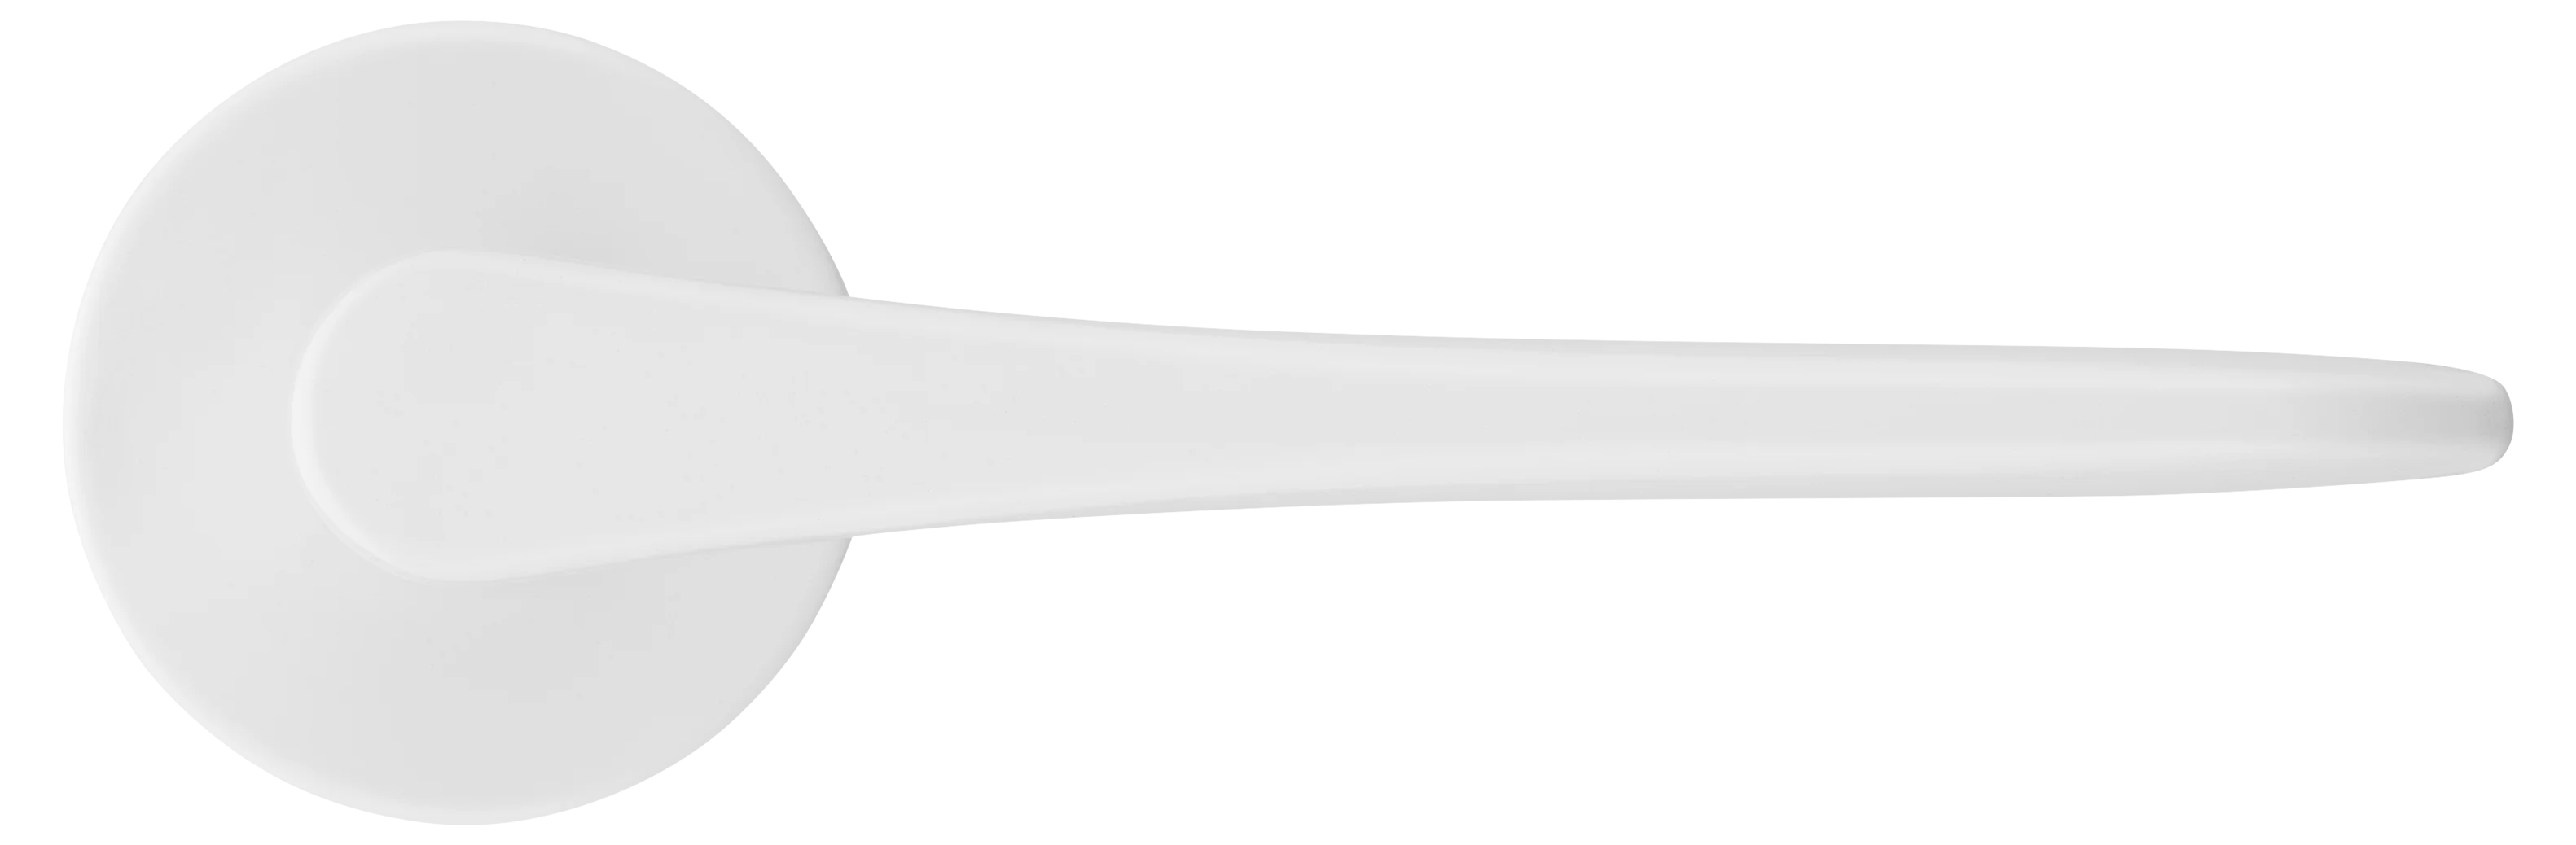 AULA R5 BIA, ручка дверная на розетке 7мм, цвет -  белый фото купить в Волгограде